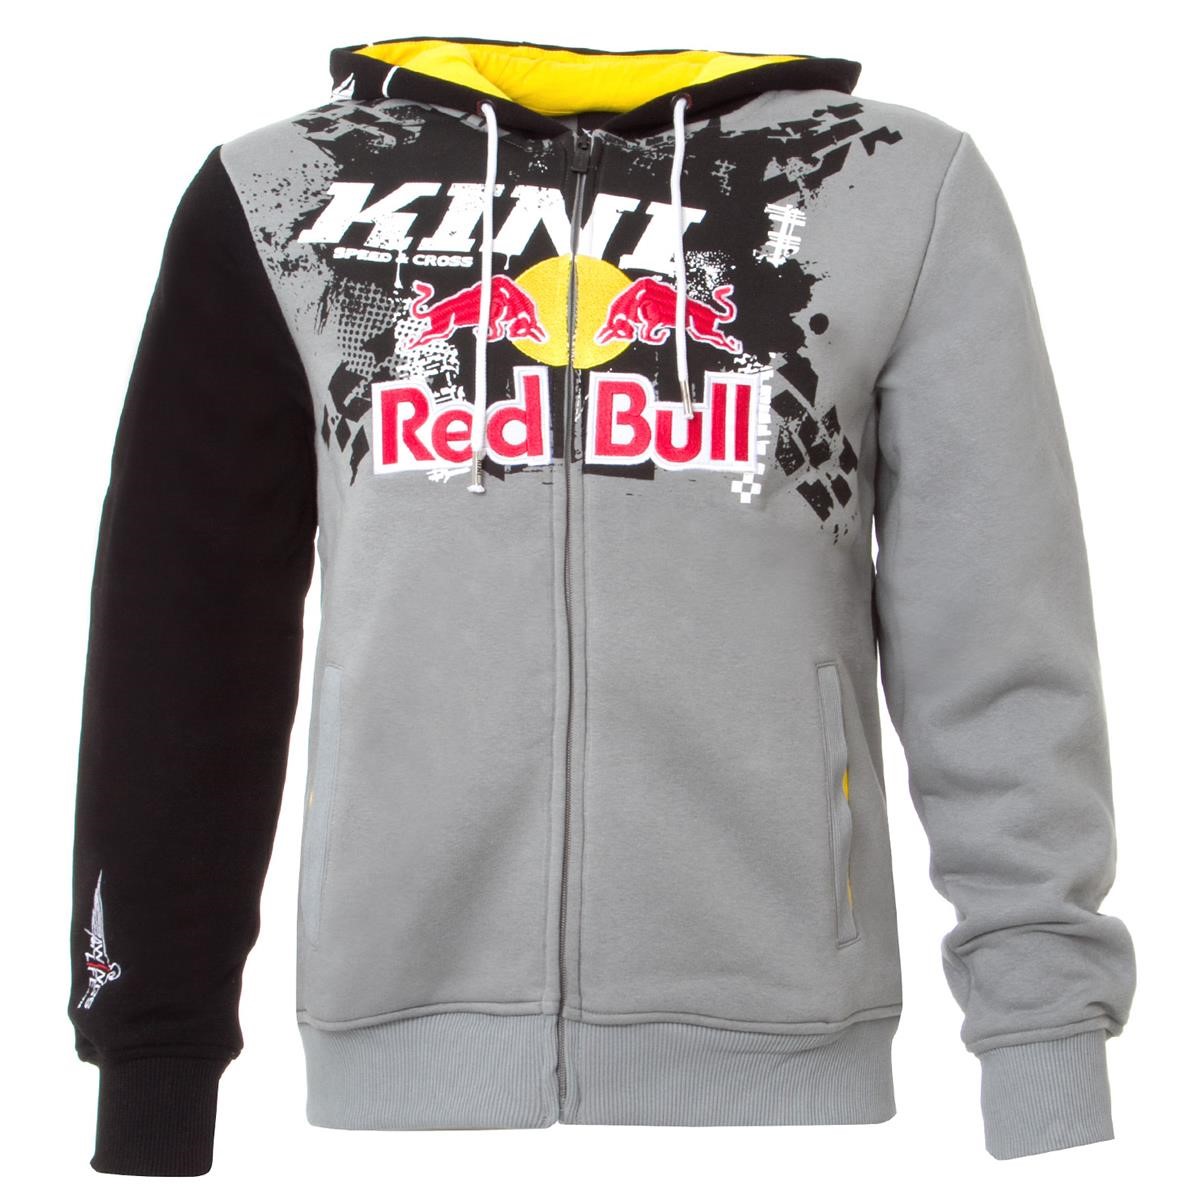 Kini Red Bull Zip Hoody Crossed Black/Grey